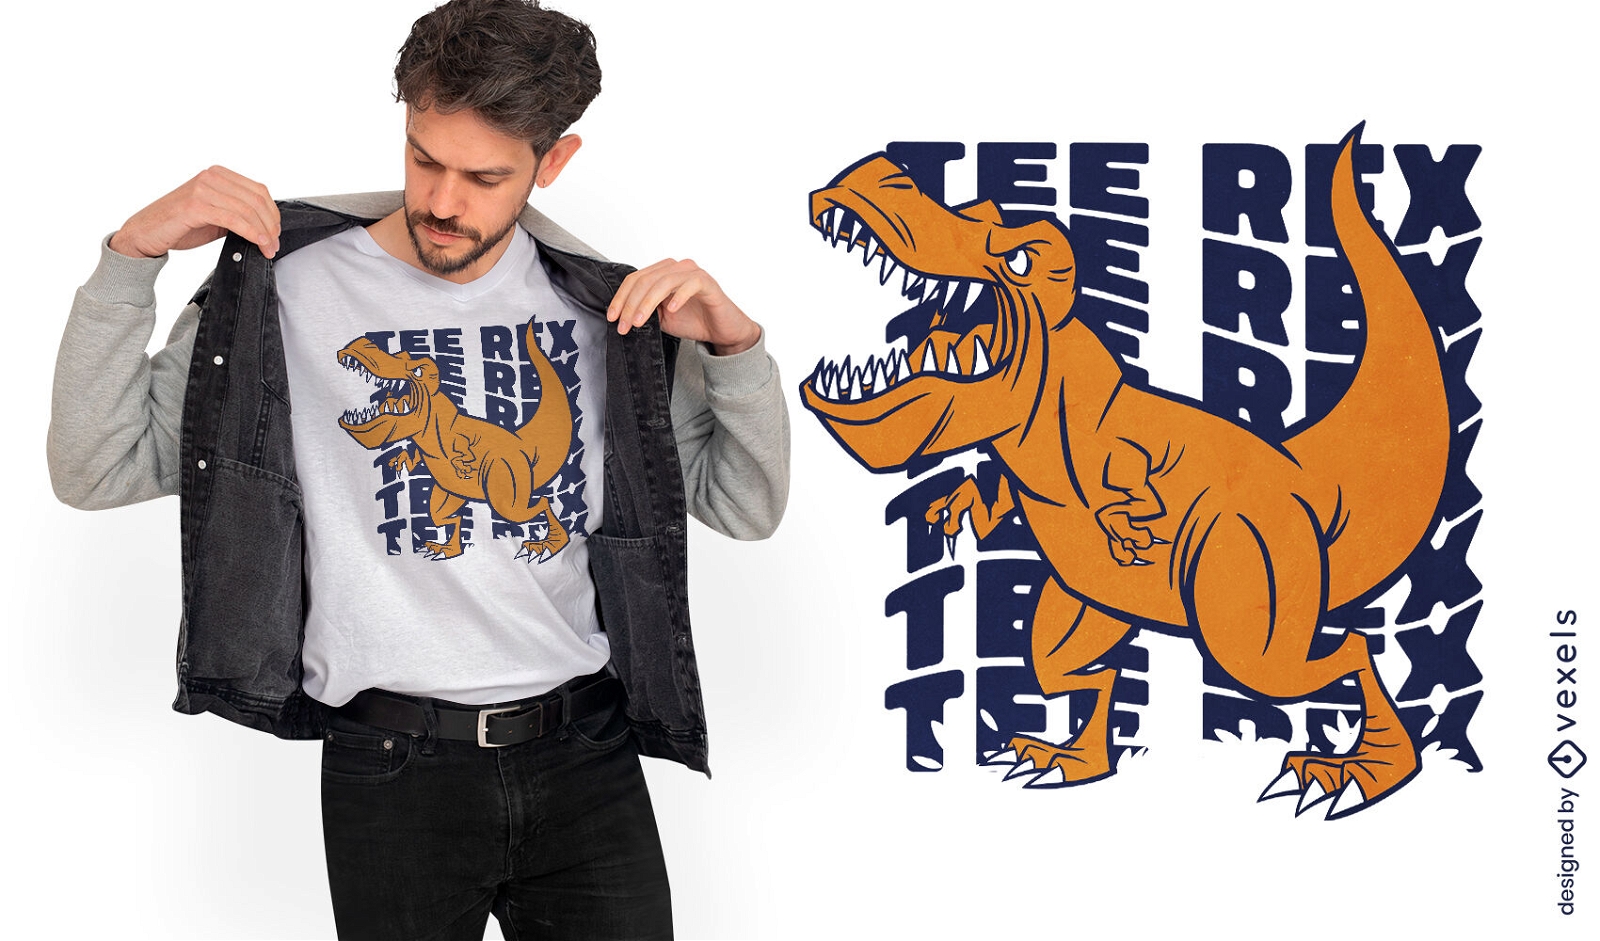 Diseño de camiseta con cita de dinosaurio T-rex